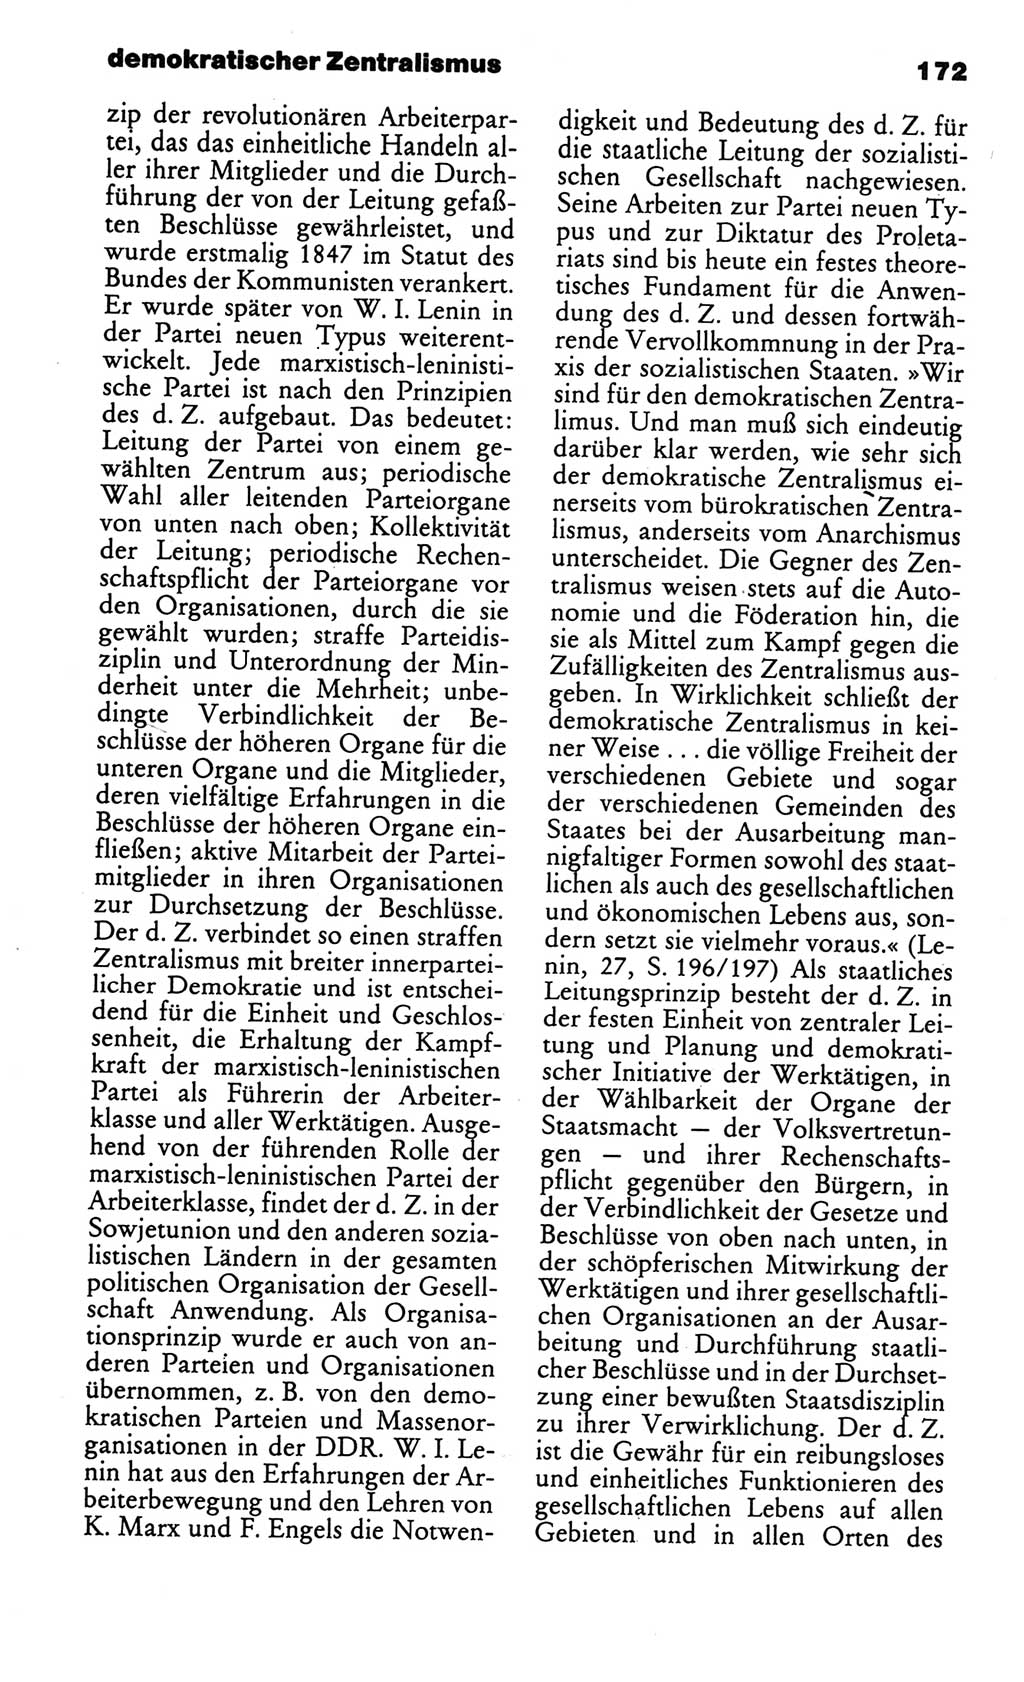 Kleines politisches Wörterbuch [Deutsche Demokratische Republik (DDR)] 1986, Seite 172 (Kl. pol. Wb. DDR 1986, S. 172)